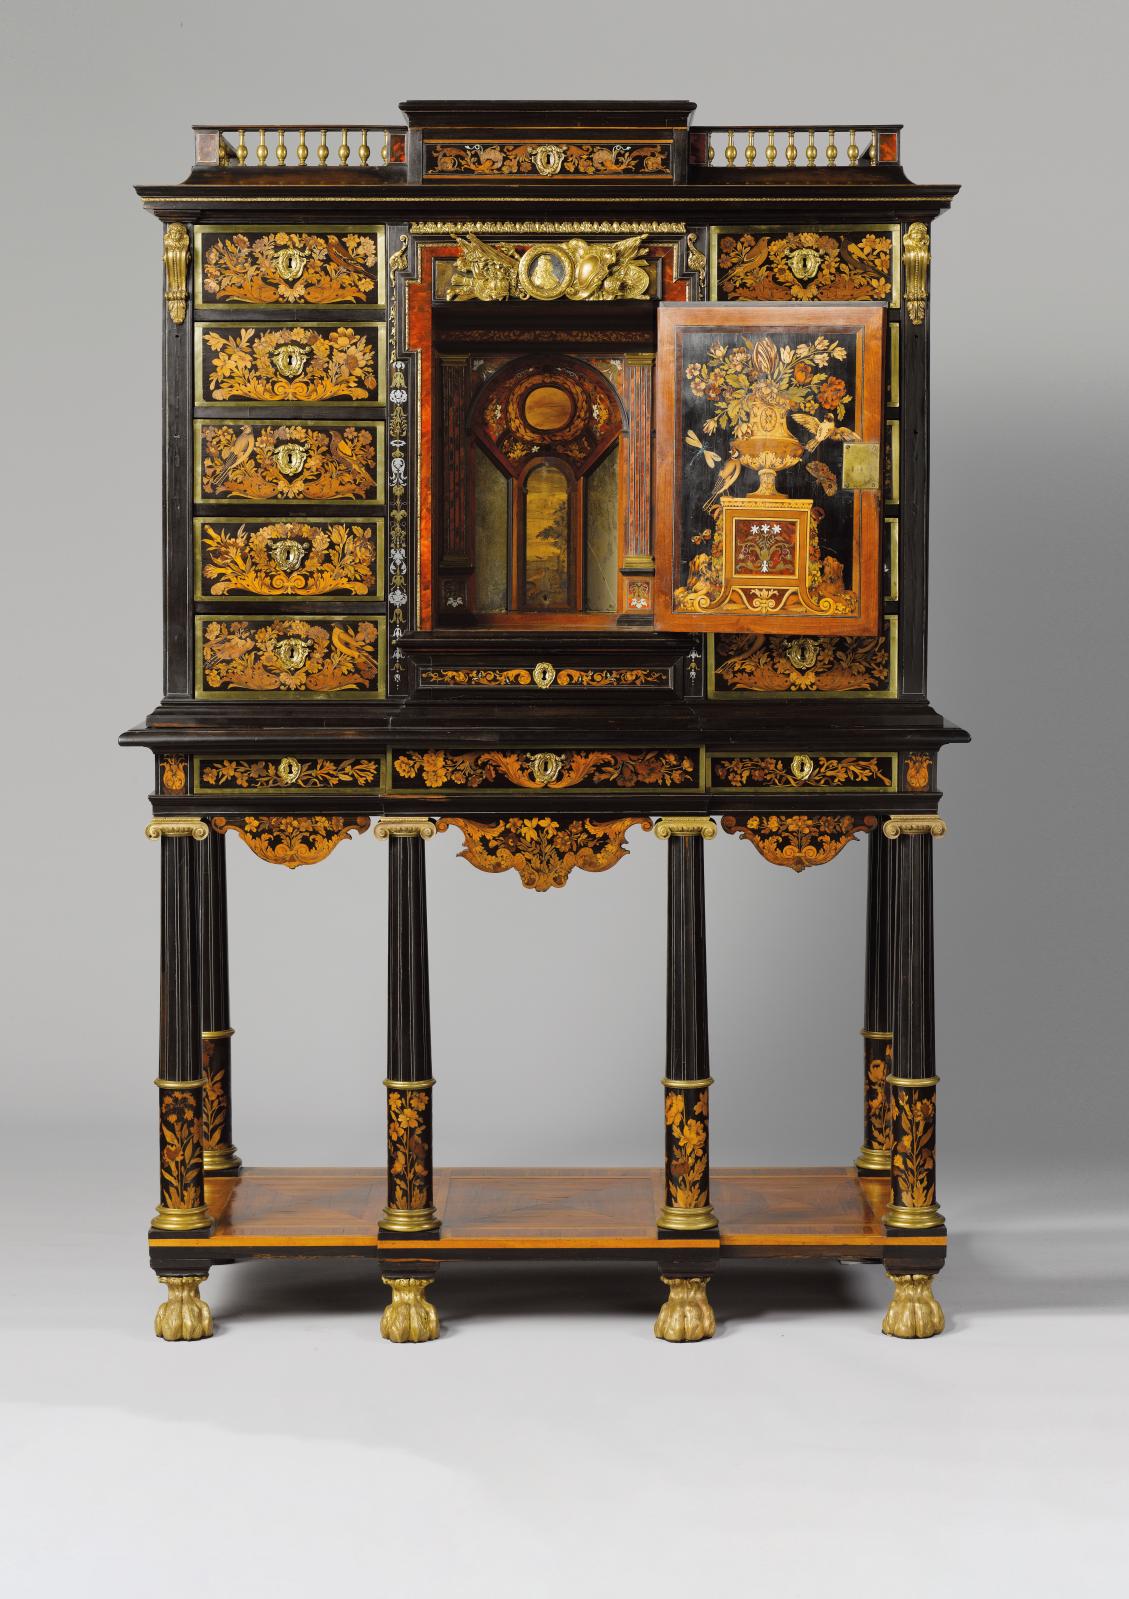 Attribué à Renaud Gaudron. (vers 1653-1727). Cabinet(état après la restauration de 1993), vers 1685, chêne, ébène, marqueterie de bois de 